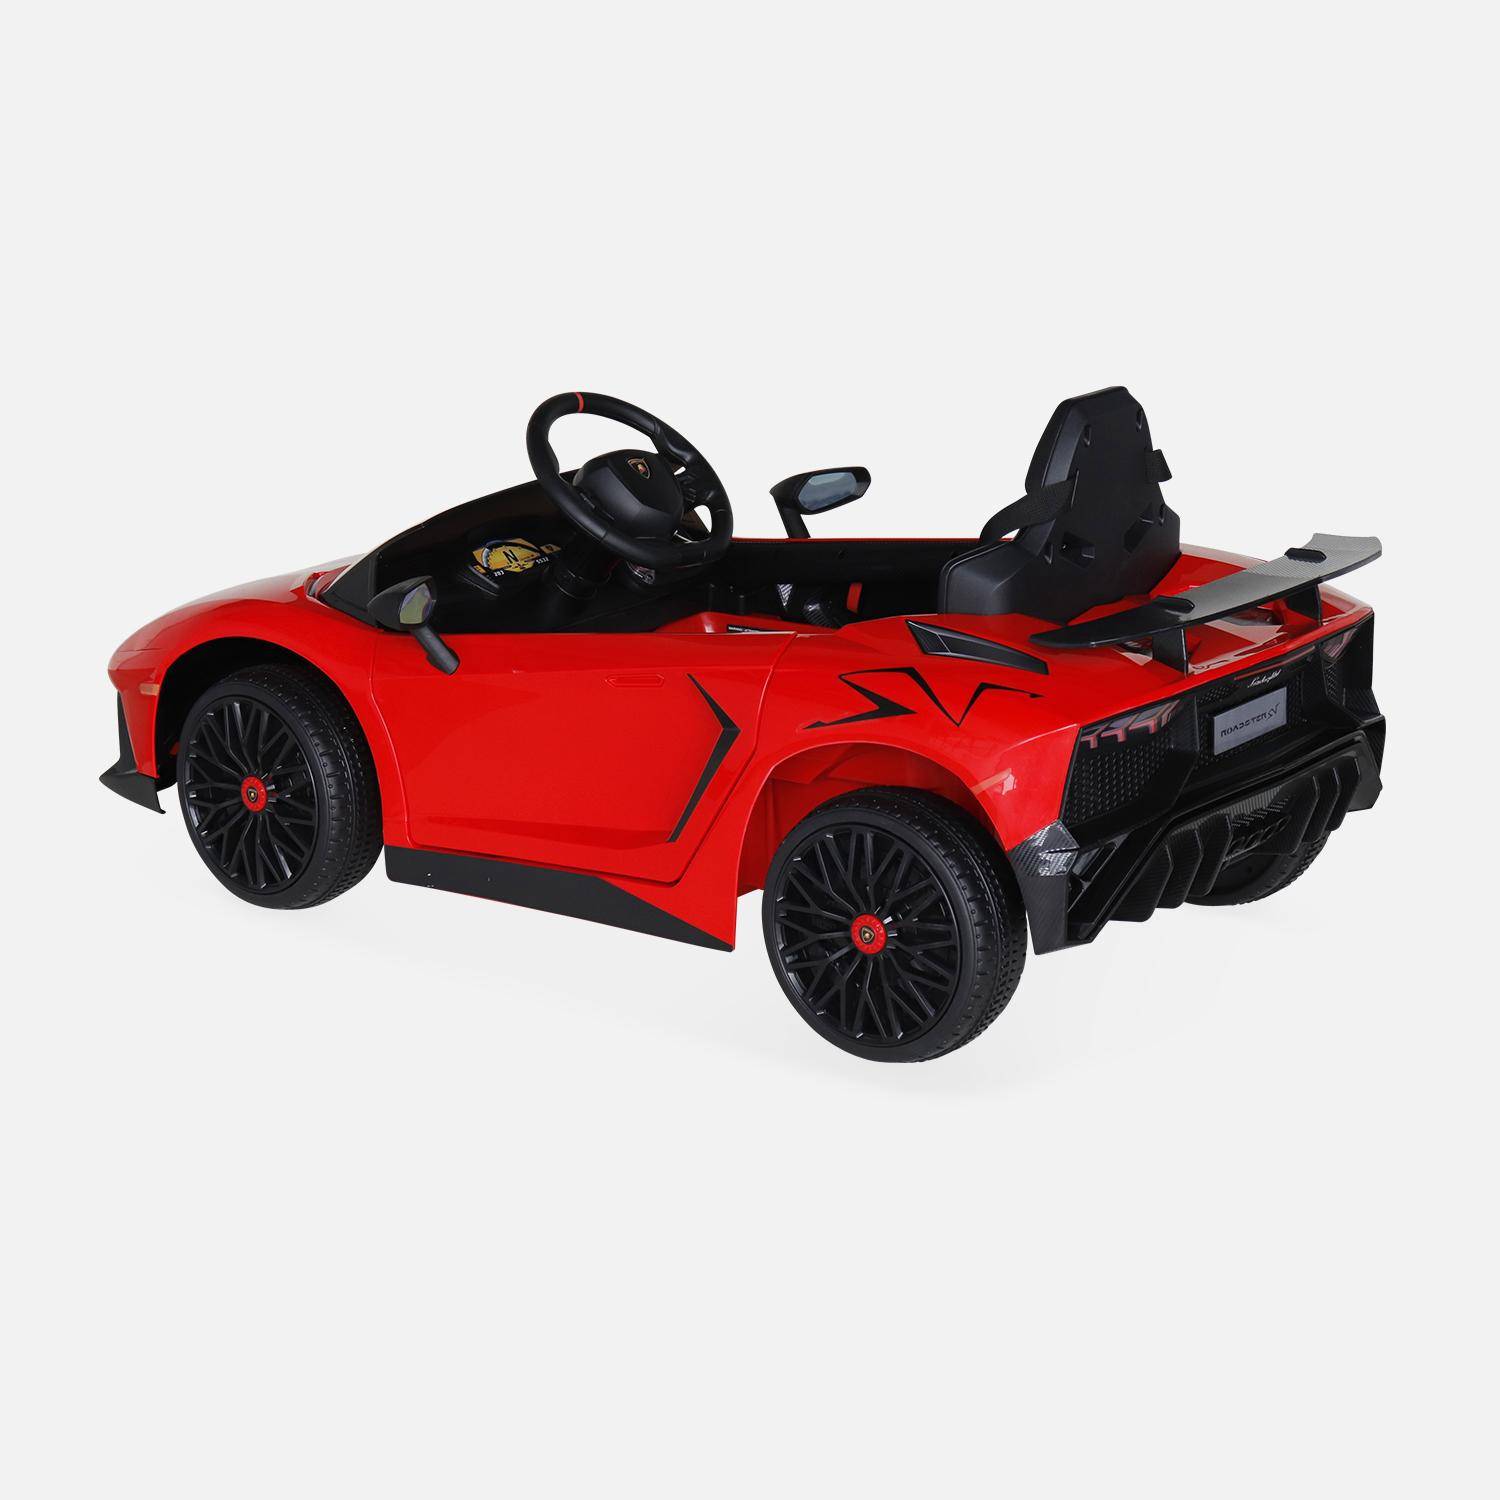 12V Lamborghini elektrische kinderauto, rood, 1 zitplaats, met autoradio, afstandsbediening, MP3, USB-poort en functionele koplampen,sweeek,Photo3